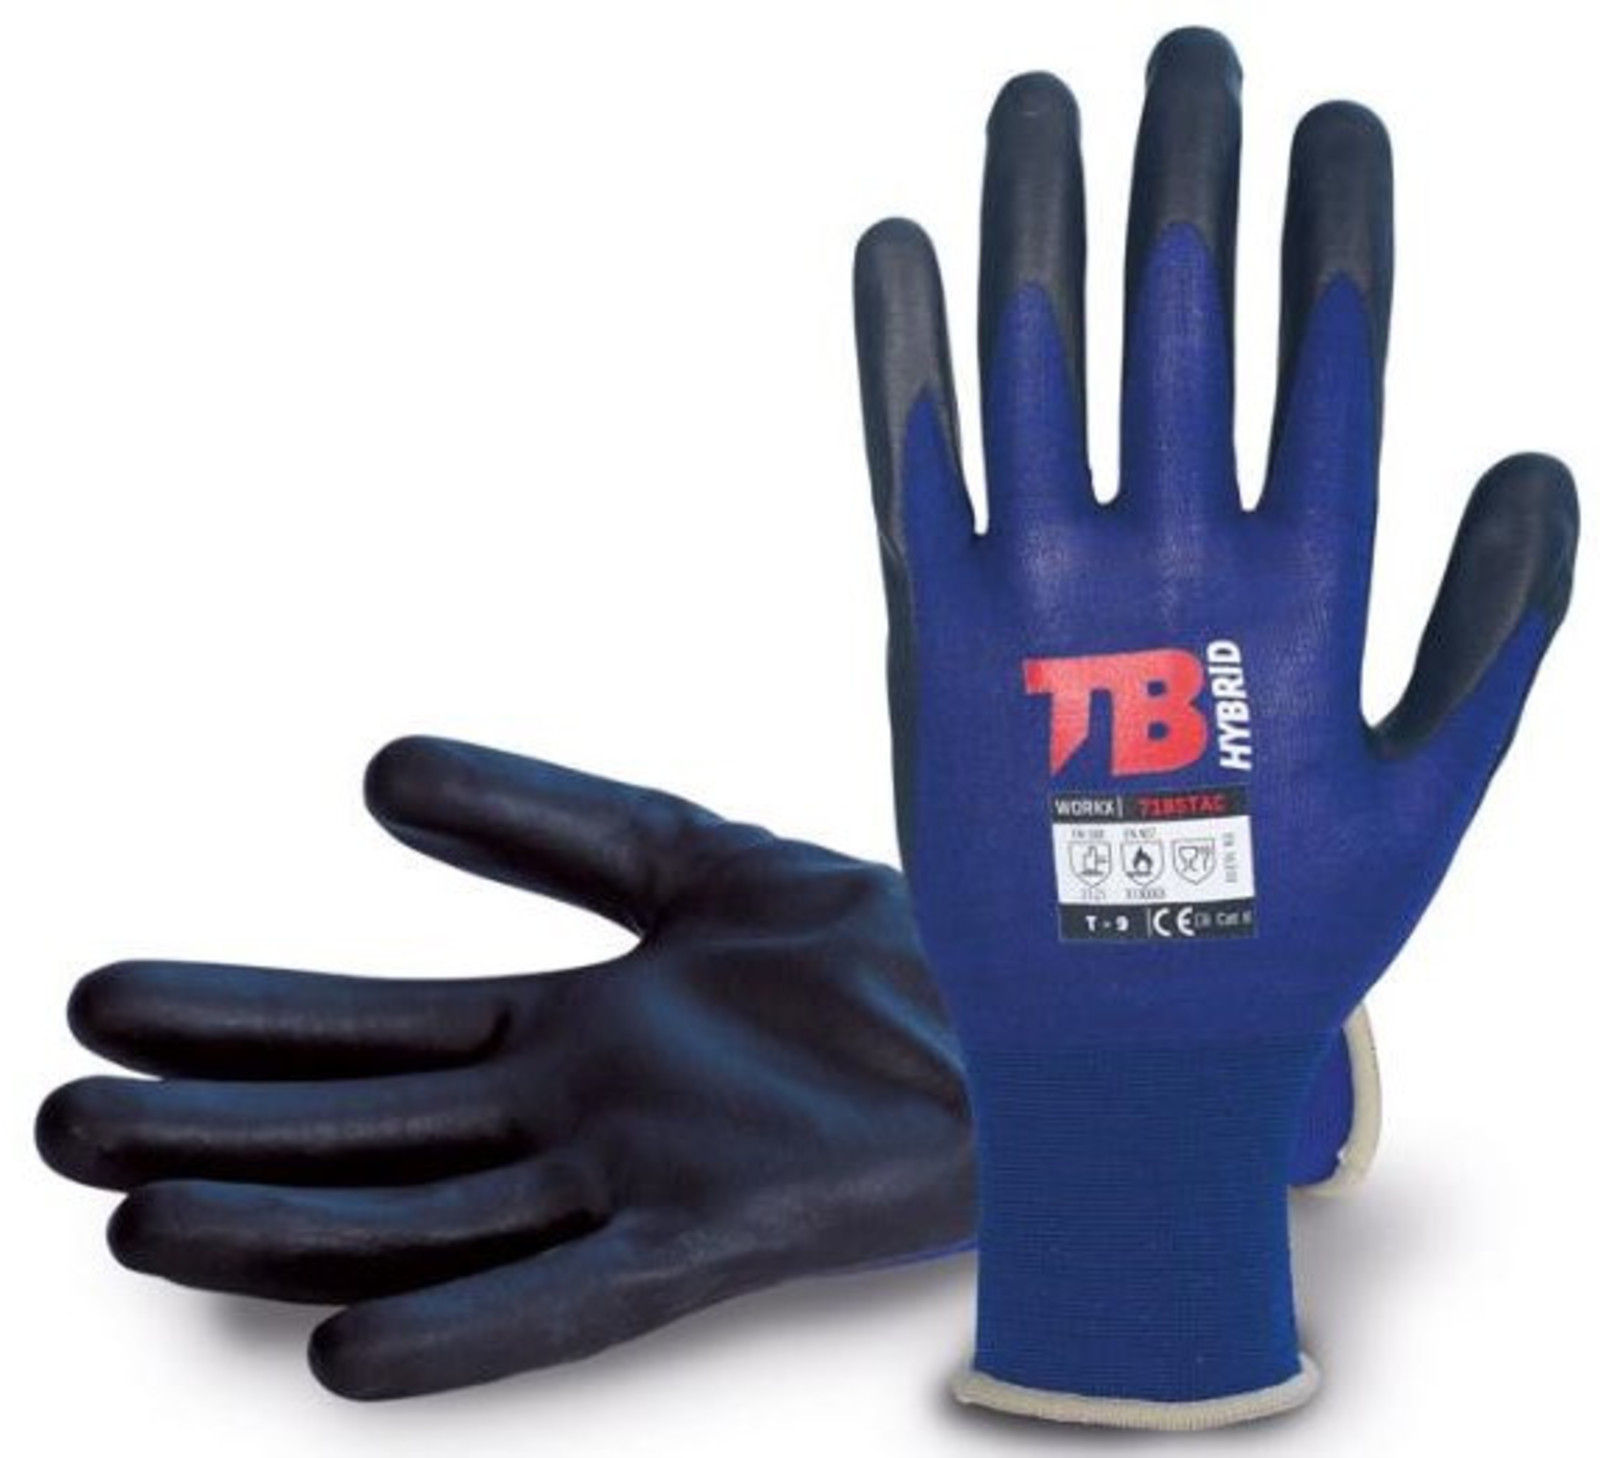 Nylonové rukavice TB 718 Stac - veľkosť: 10/XL